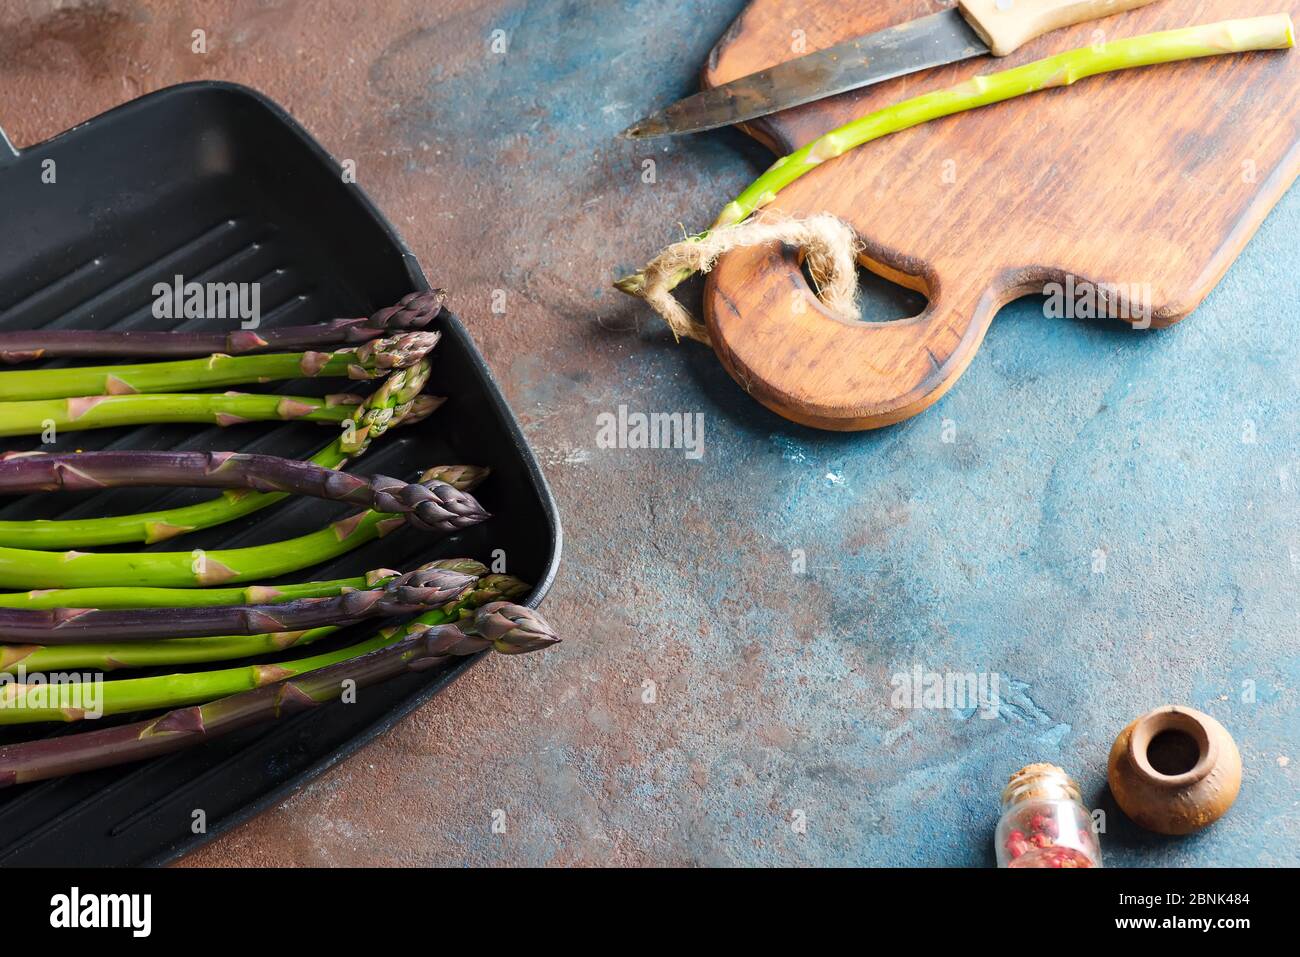 Légumes d'asperges verts et violets naturels frais dans une casserole prête à cuire des aliments sains sur fond de pierre. Banque D'Images